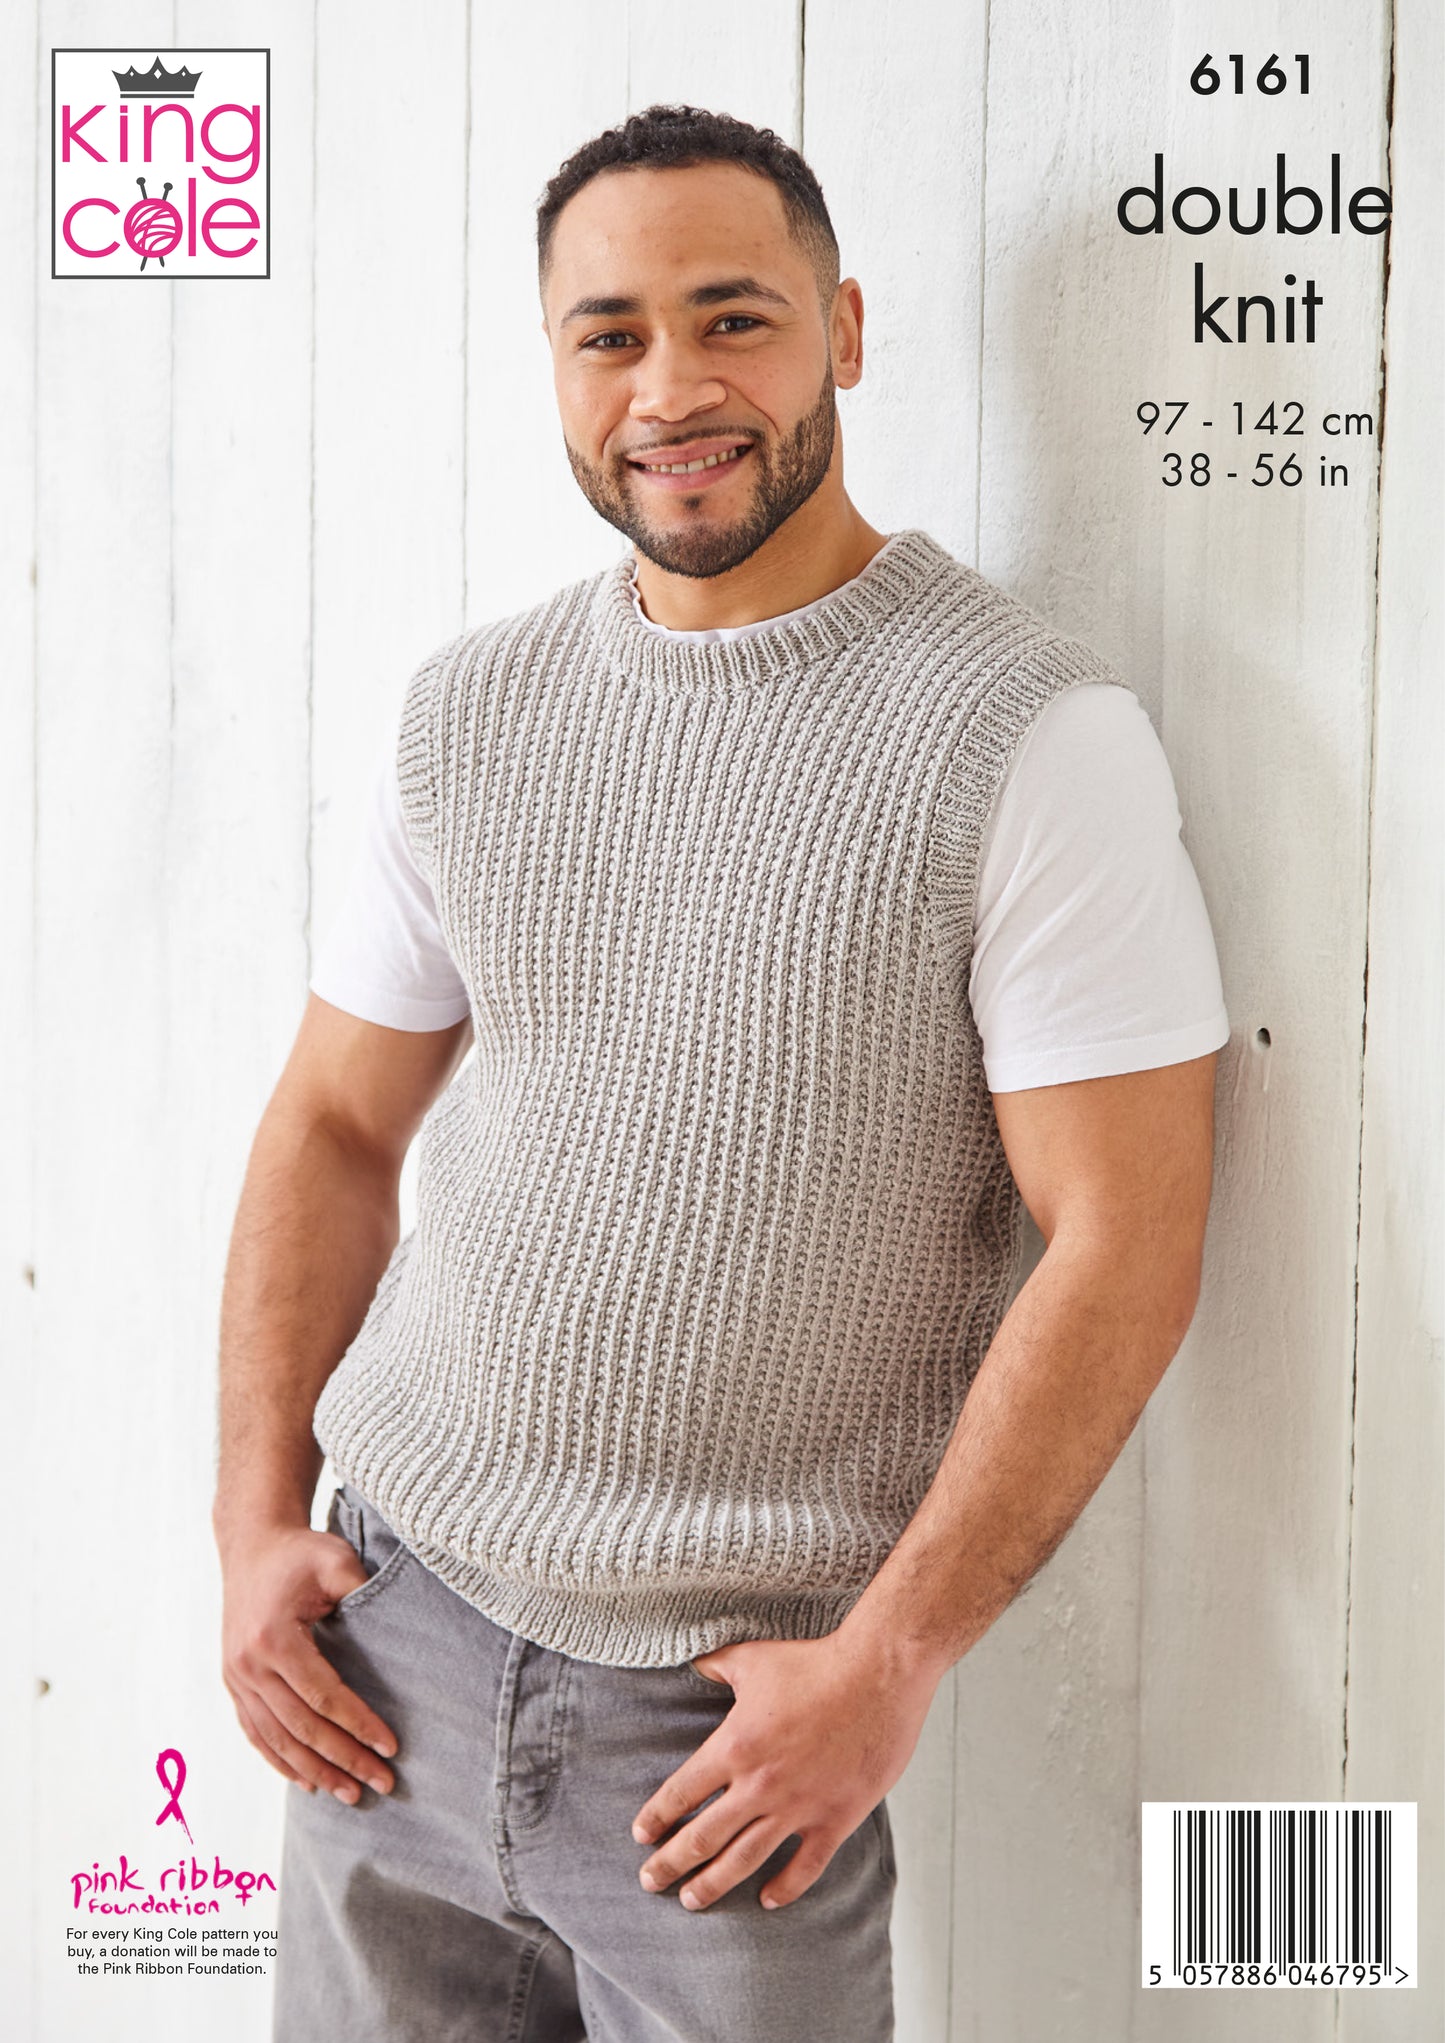 Knitting Pattern 6161 - Sweater & Slipover Knitted in Simply Denim DK